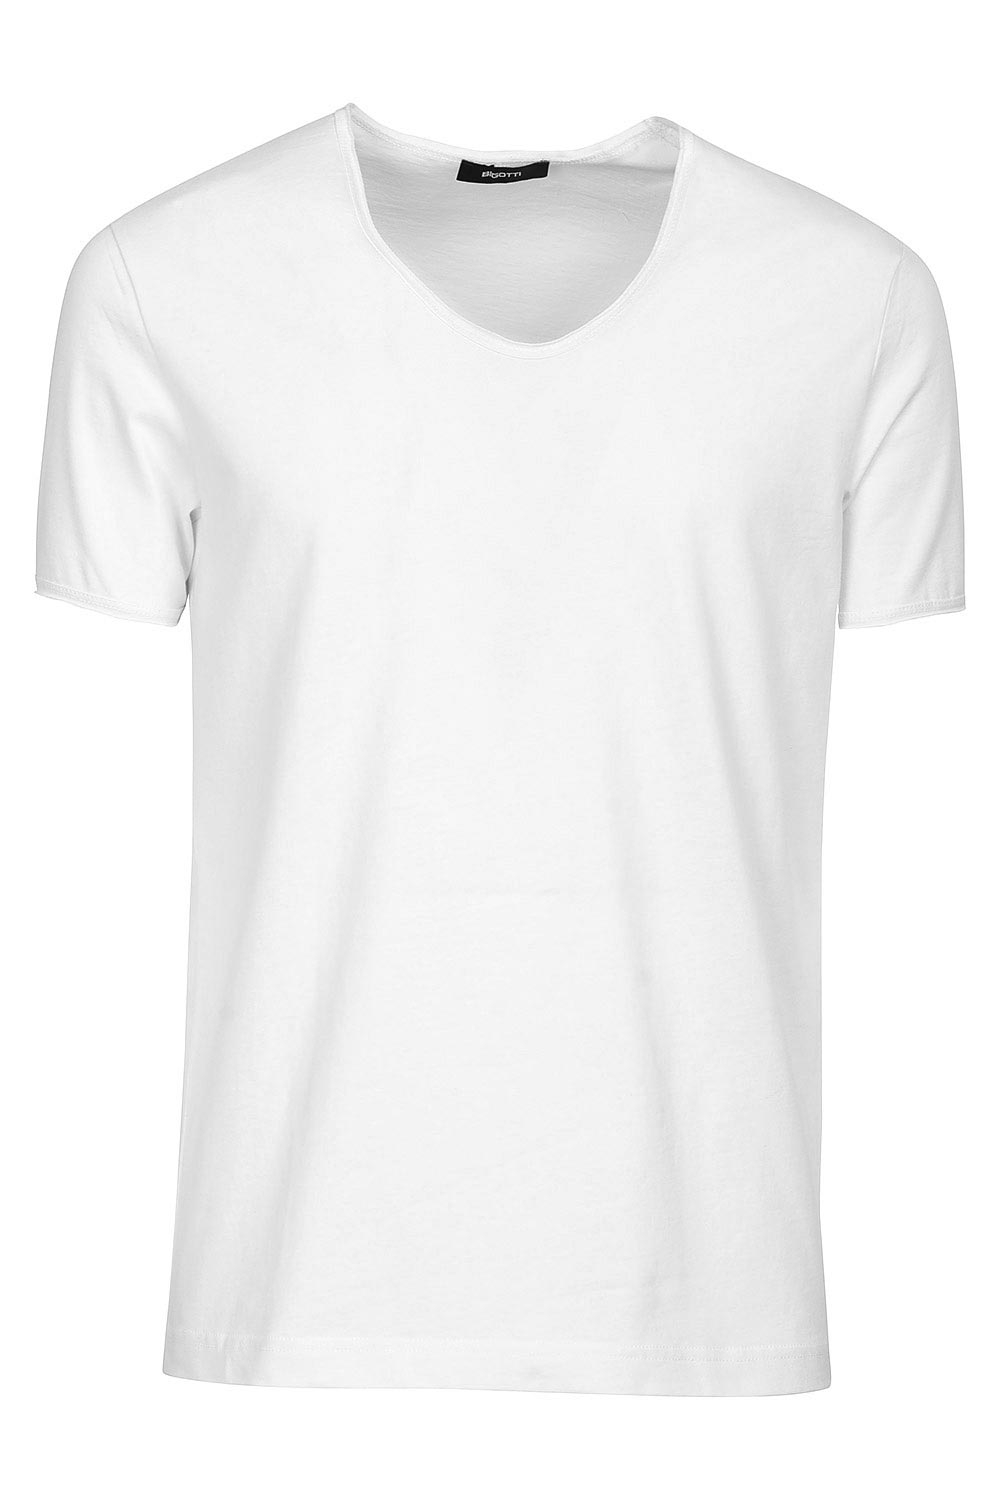 White plain t-shirt 0